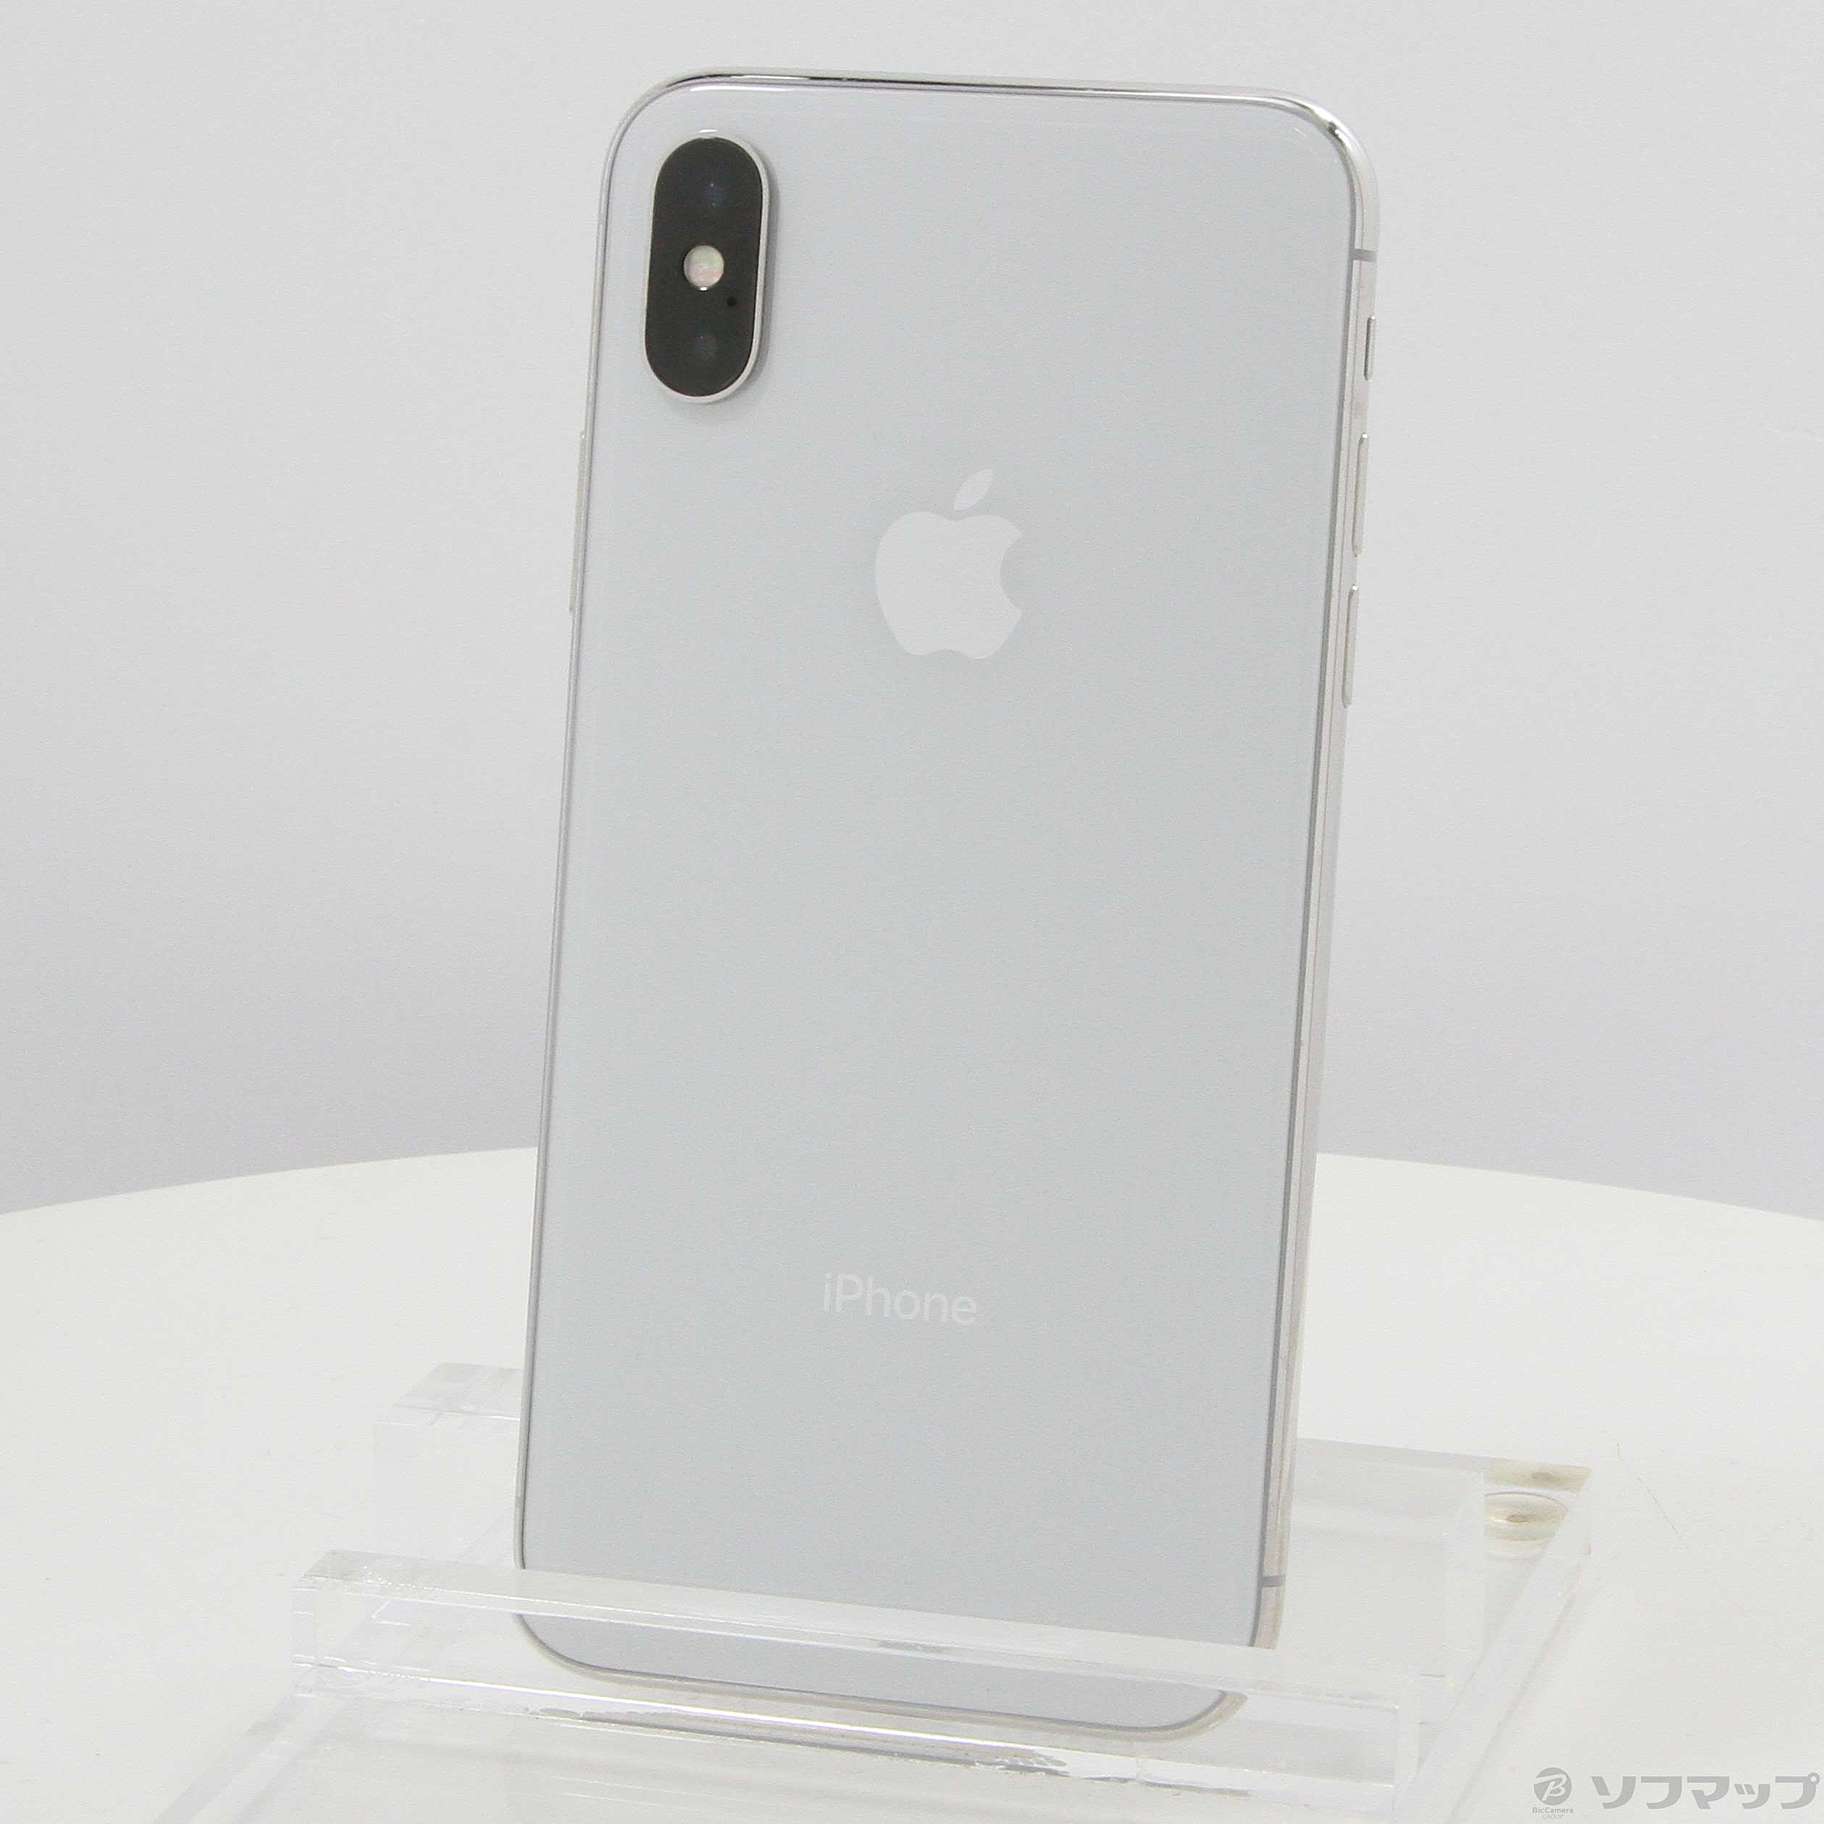 Apple iPhone X Silver 256GB SIMフリー